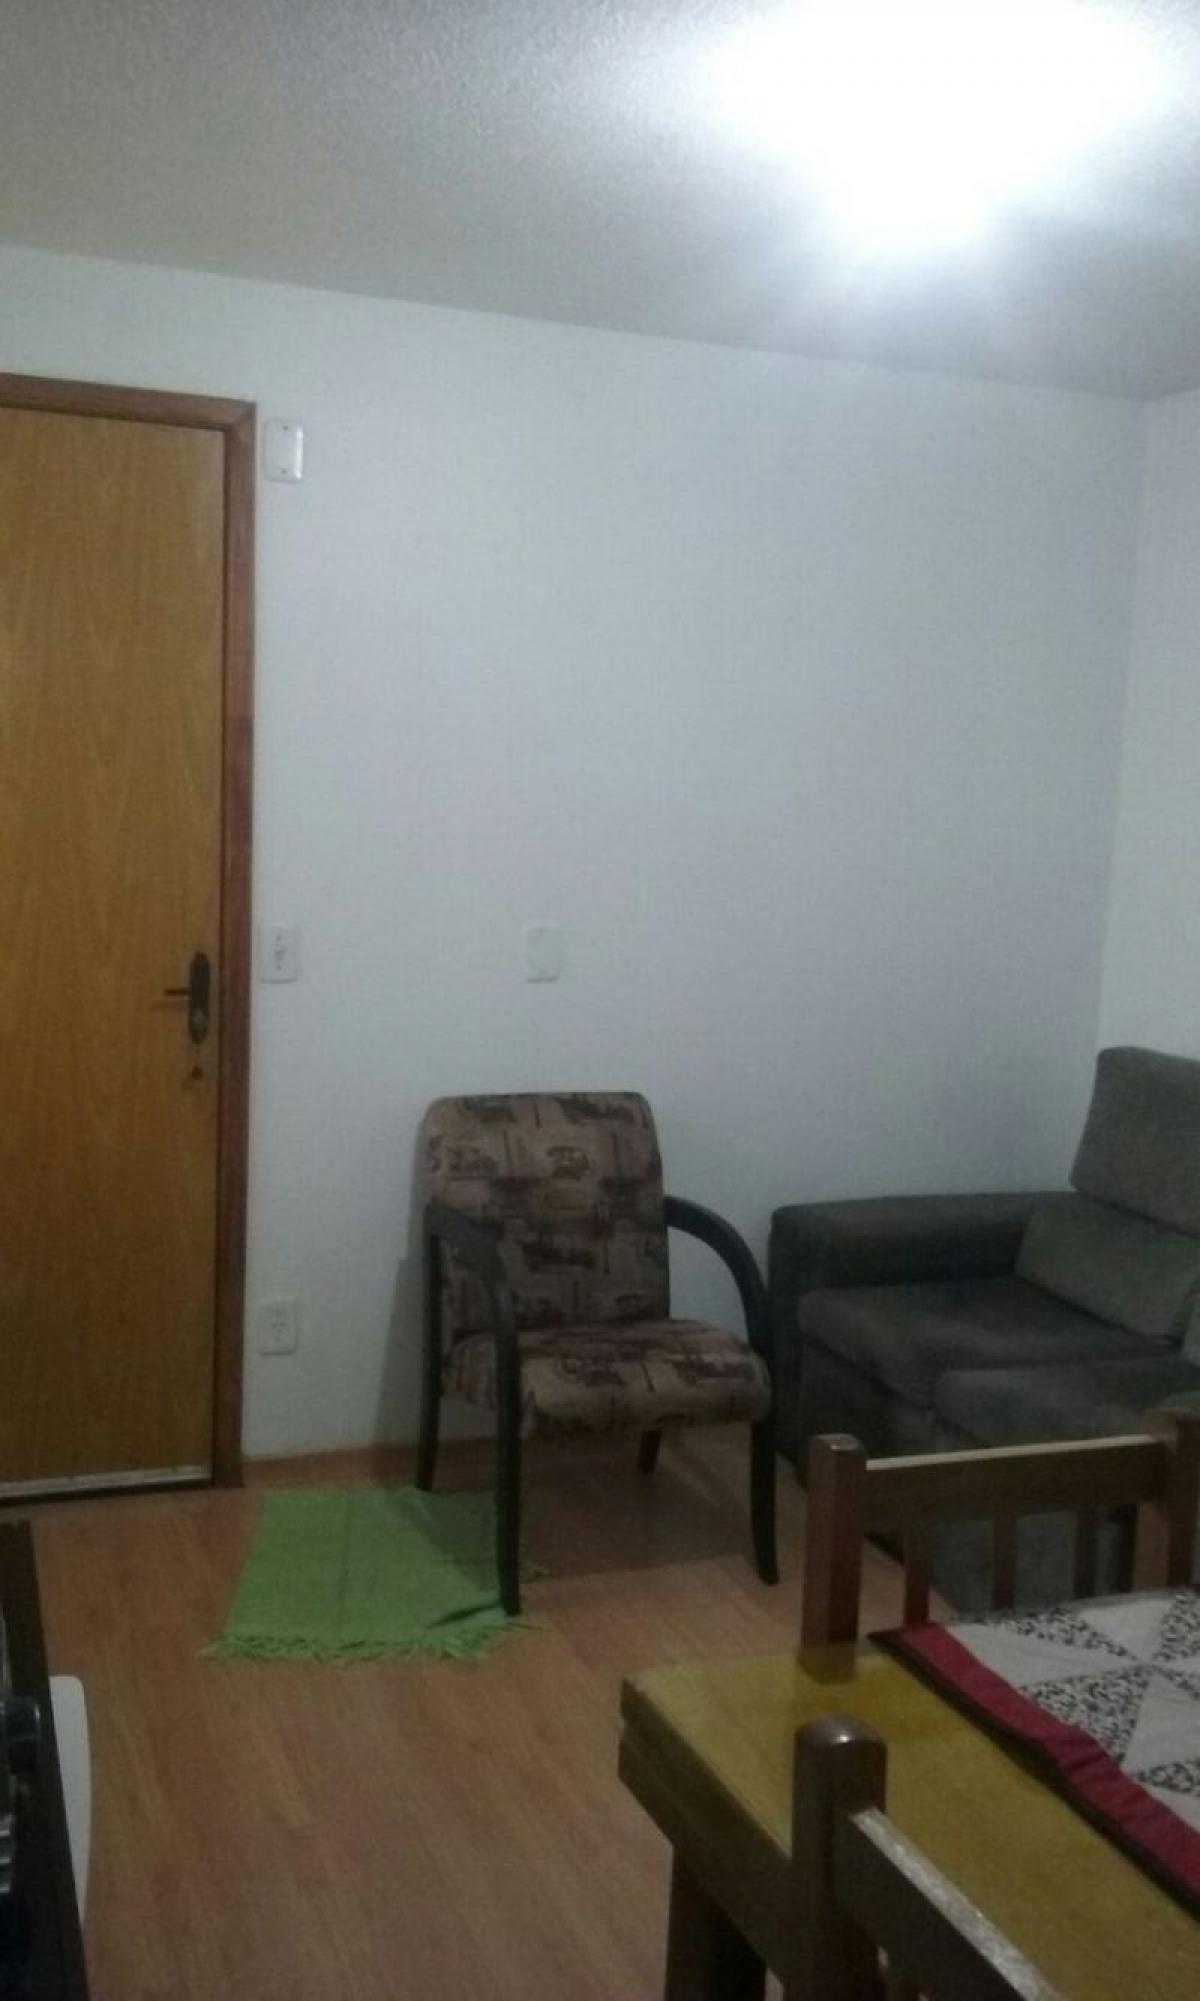 Picture of Apartment For Sale in Sapucaia Do Sul, Rio Grande do Sul, Brazil